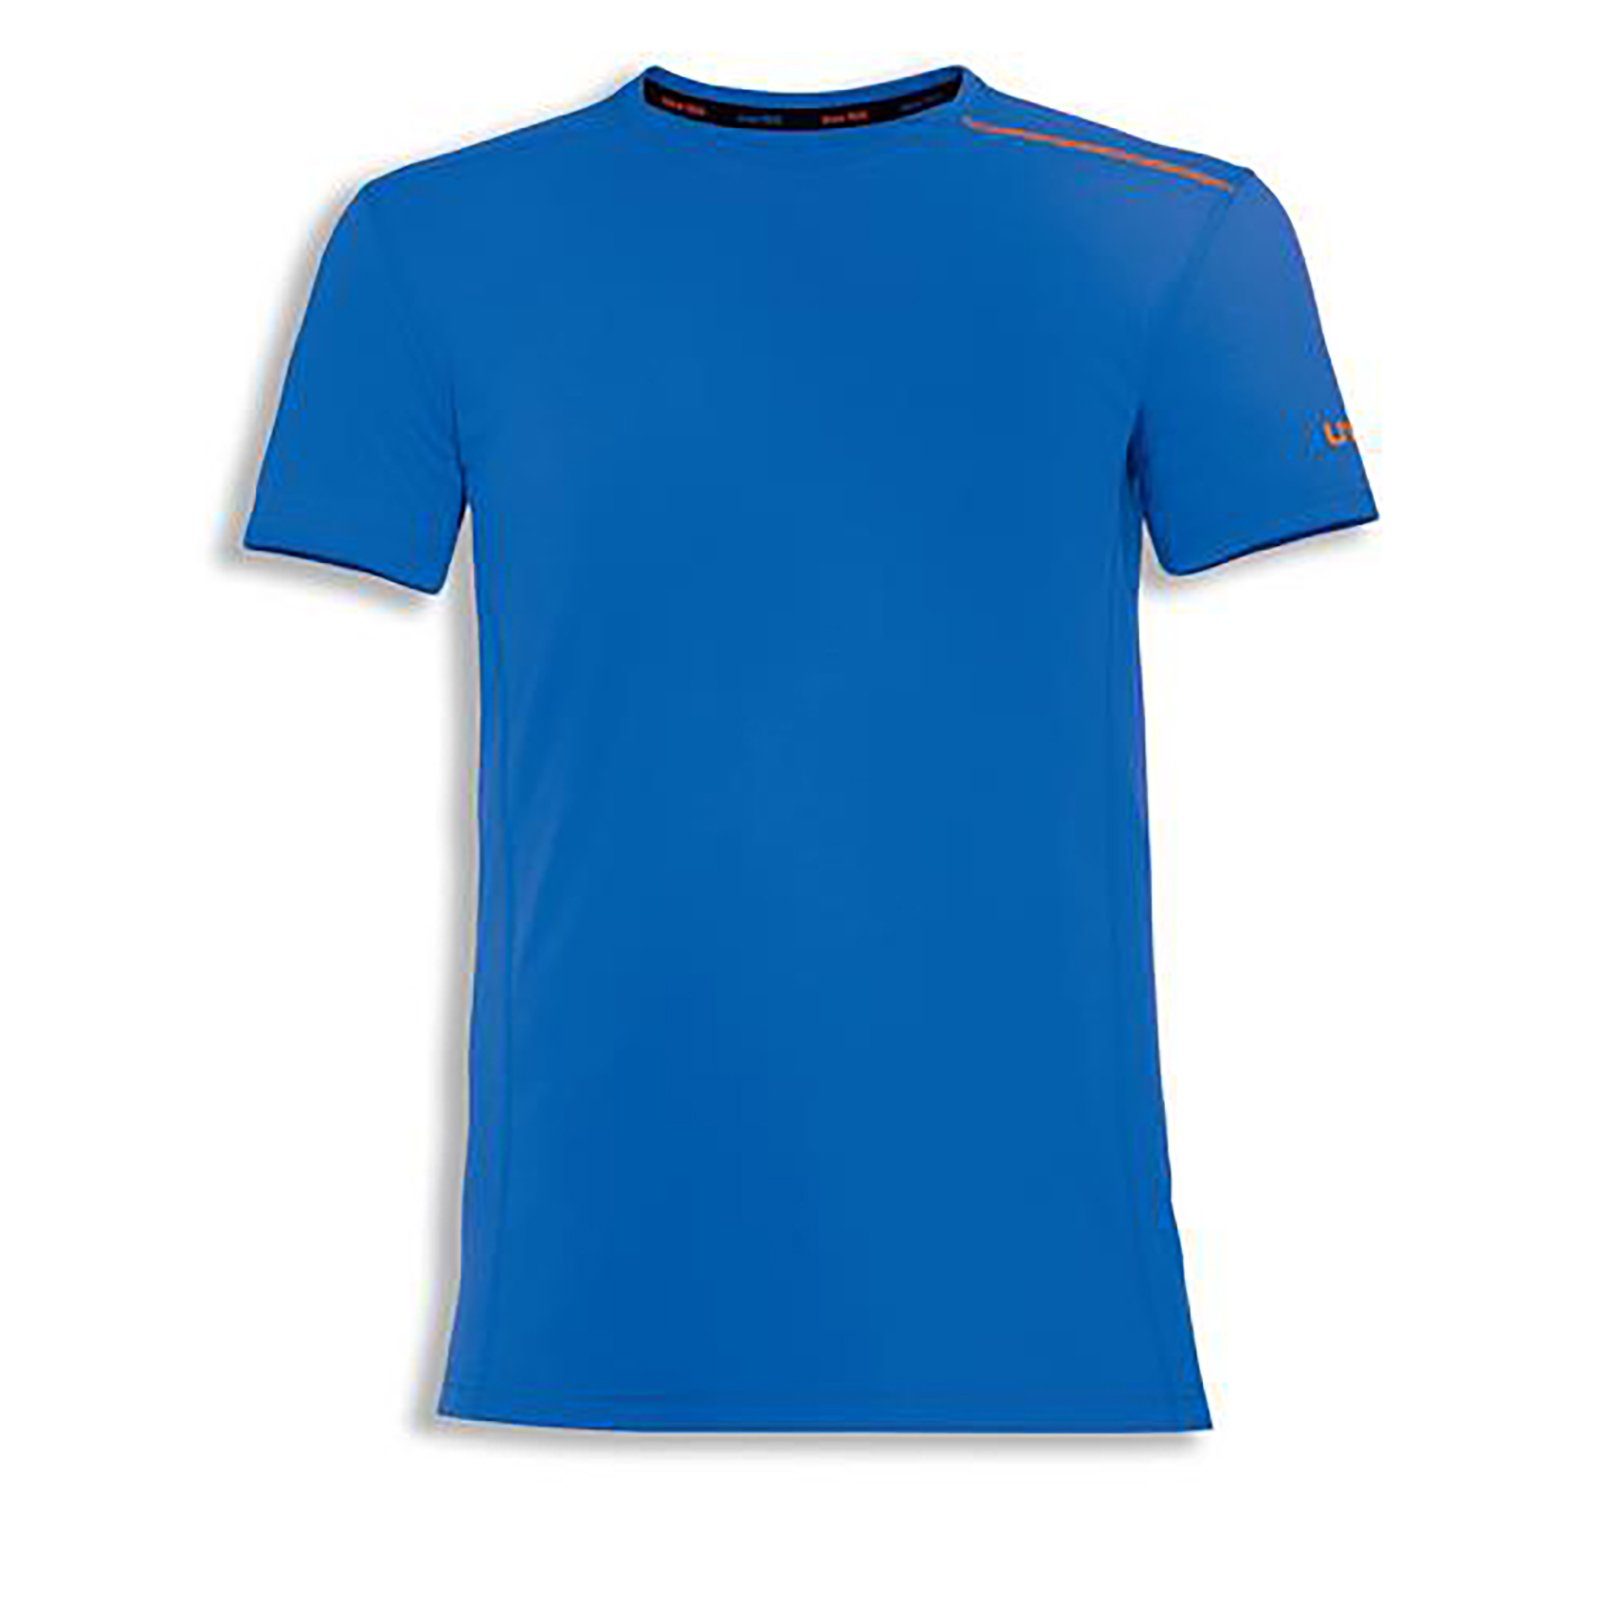 T-Shirt blau, suXXeed T-Shirt Uvex ultramarin